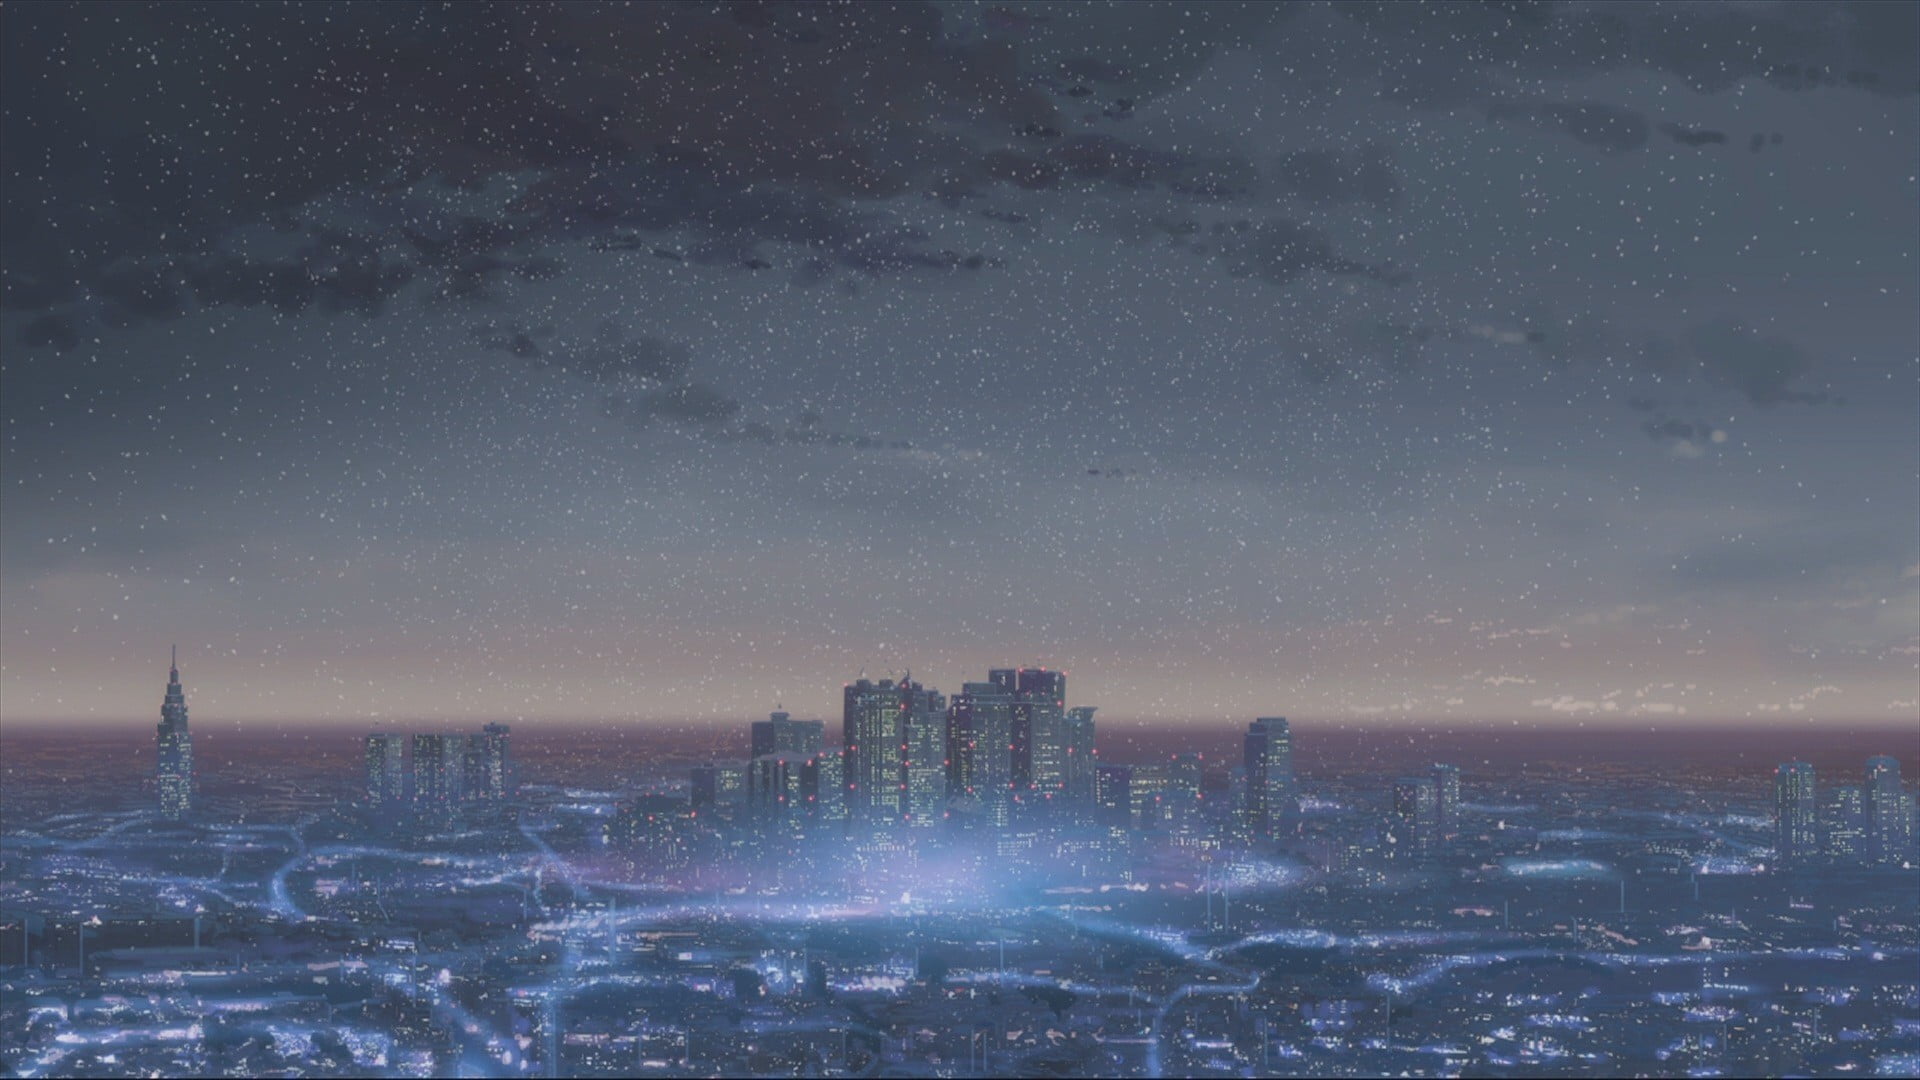 aerial view of cityscape, Makoto Shinkai , anime, 5 Centimeters Per Second